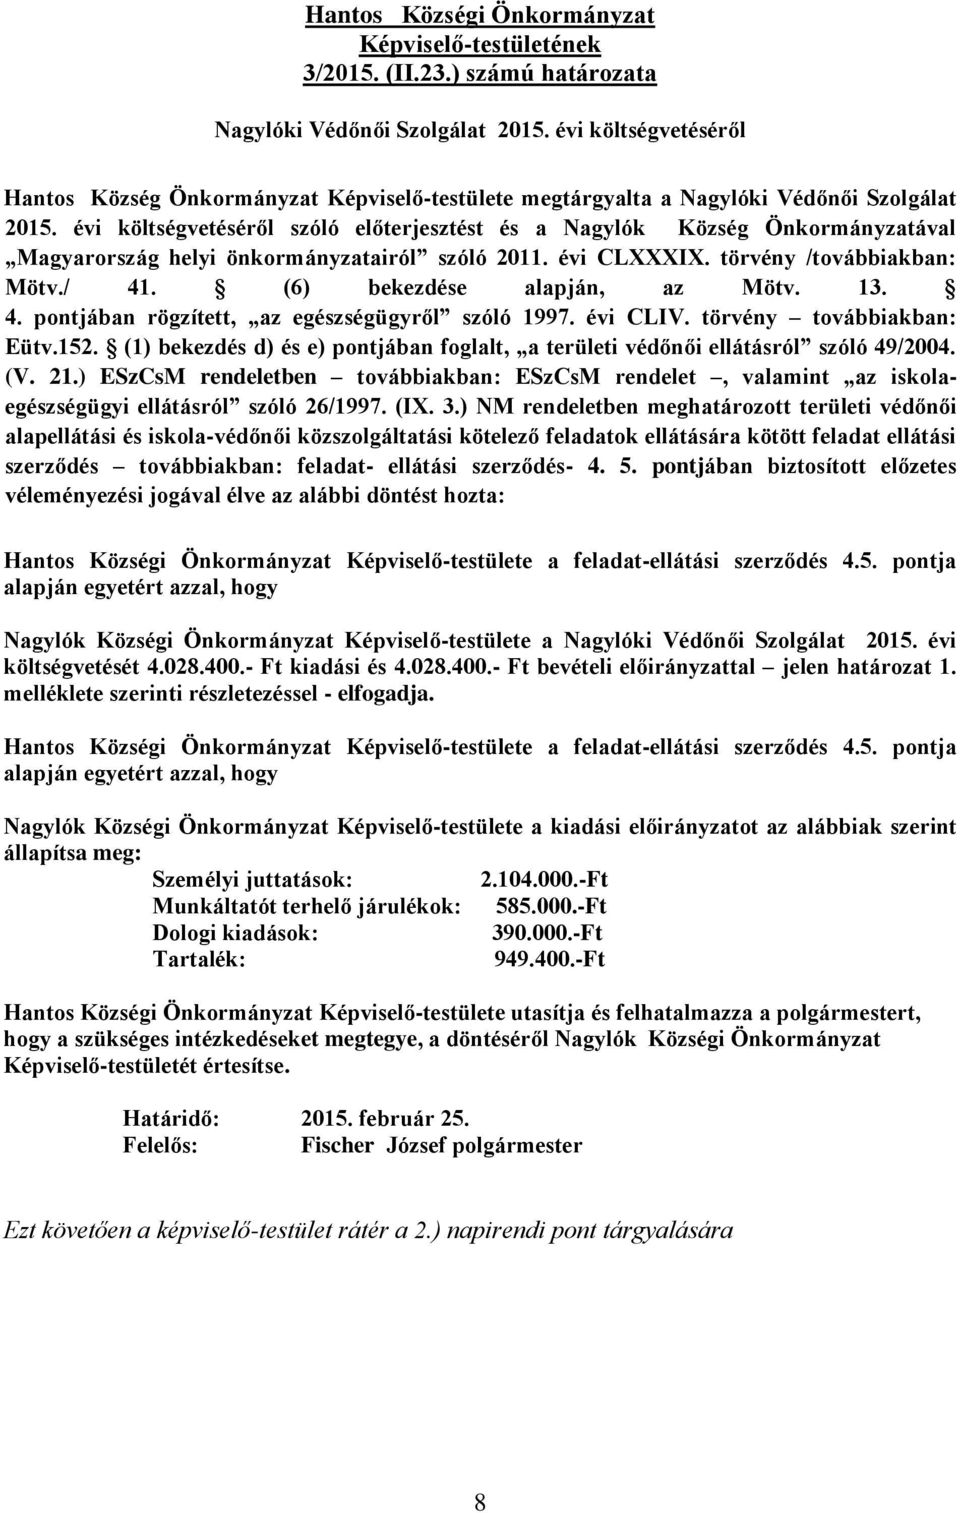 évi költségvetéséről szóló előterjesztést és a Nagylók Község Önkormányzatával Magyarország helyi önkormányzatairól szóló 2011. évi CLXXXIX. törvény /továbbiakban: Mötv./ 41.